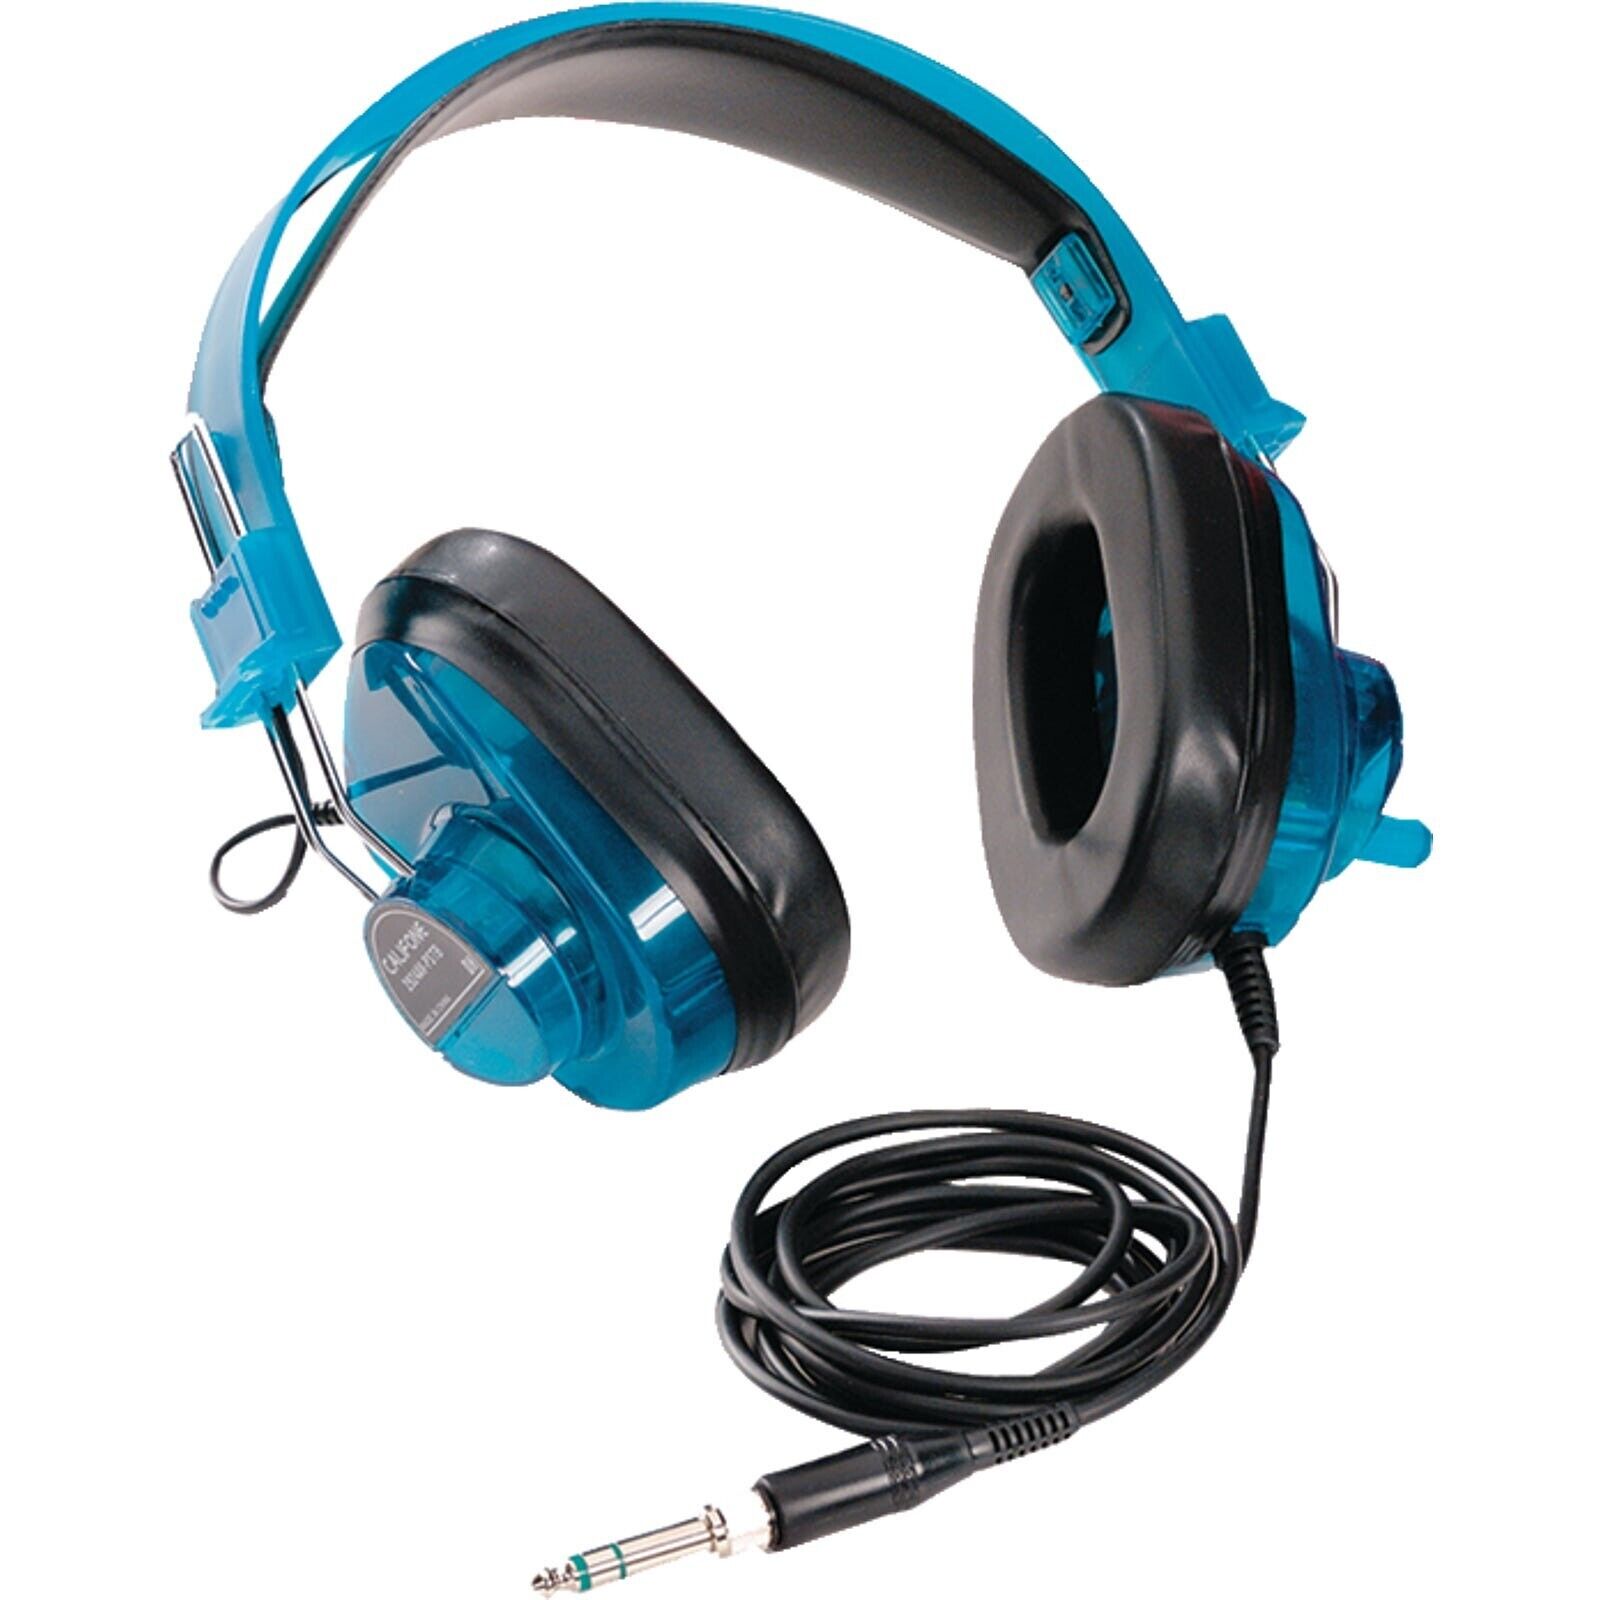 Califone 2924AV-PS-BL 6-foot Cord 3.5mm Plug Deluxe Stereo Over-Ear Headphones